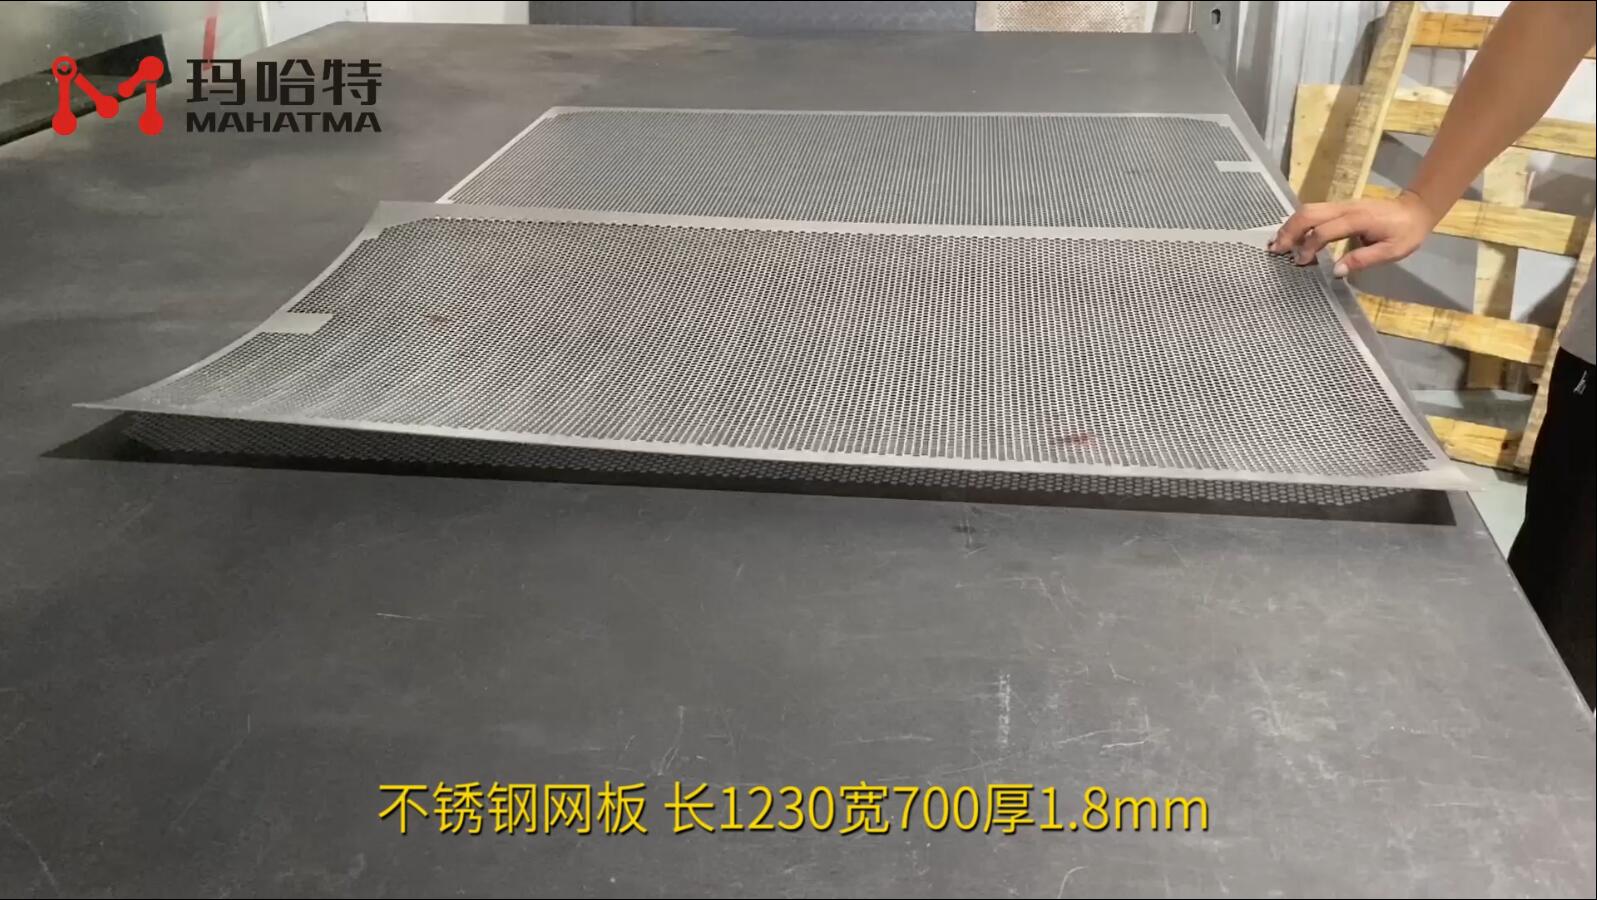 不锈钢网板 MHT50-1300 长方形 长1230宽700厚1.8mm